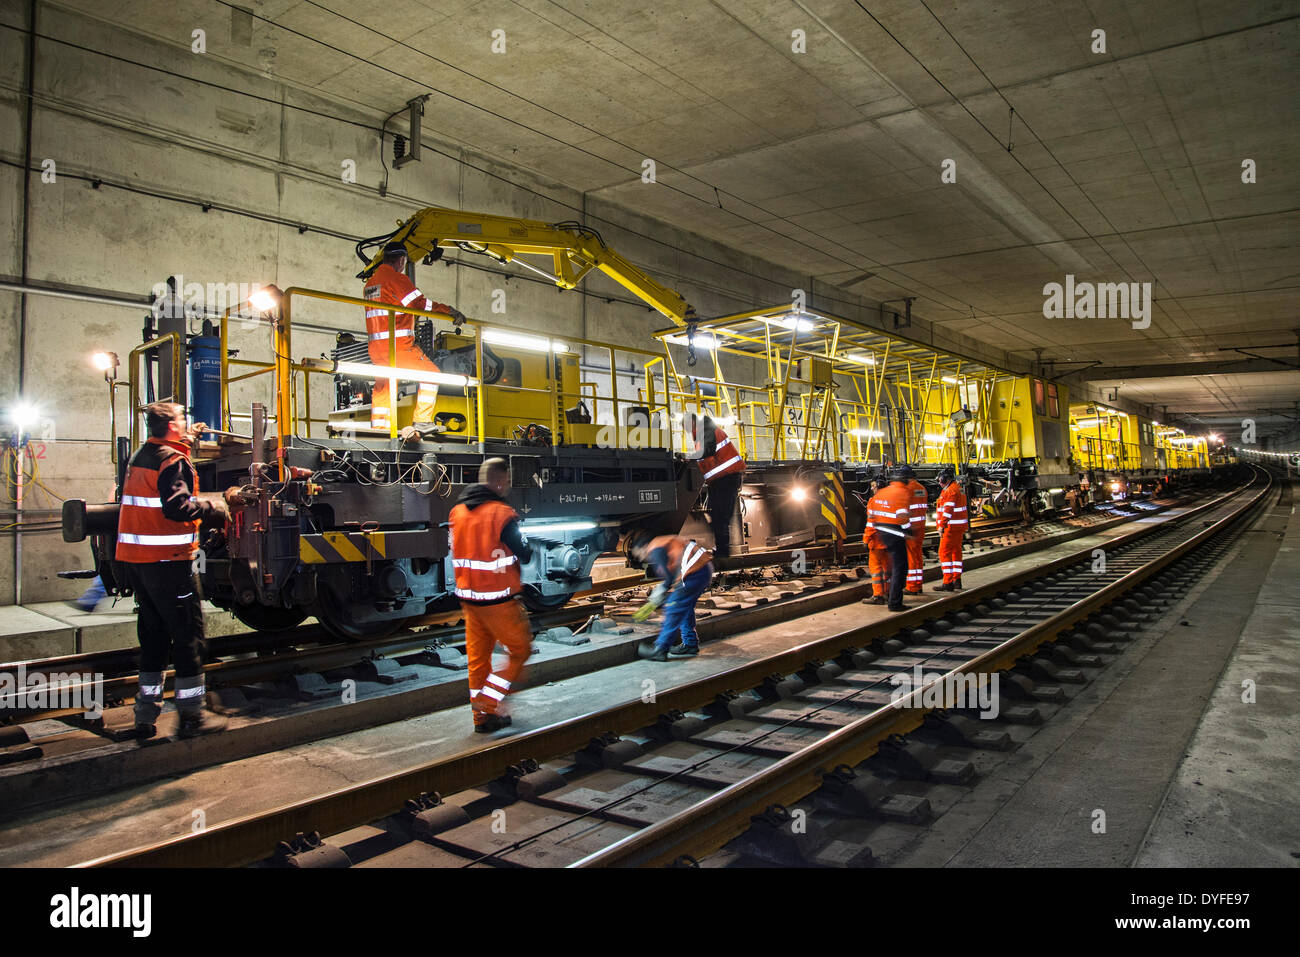 Stazione di lavoro per la posa in opera di nuove guide e la rimozione di vecchie rotaie in un tunnel ferroviario nei pressi di Francoforte, Germania, Aprile 2014. Foto Stock